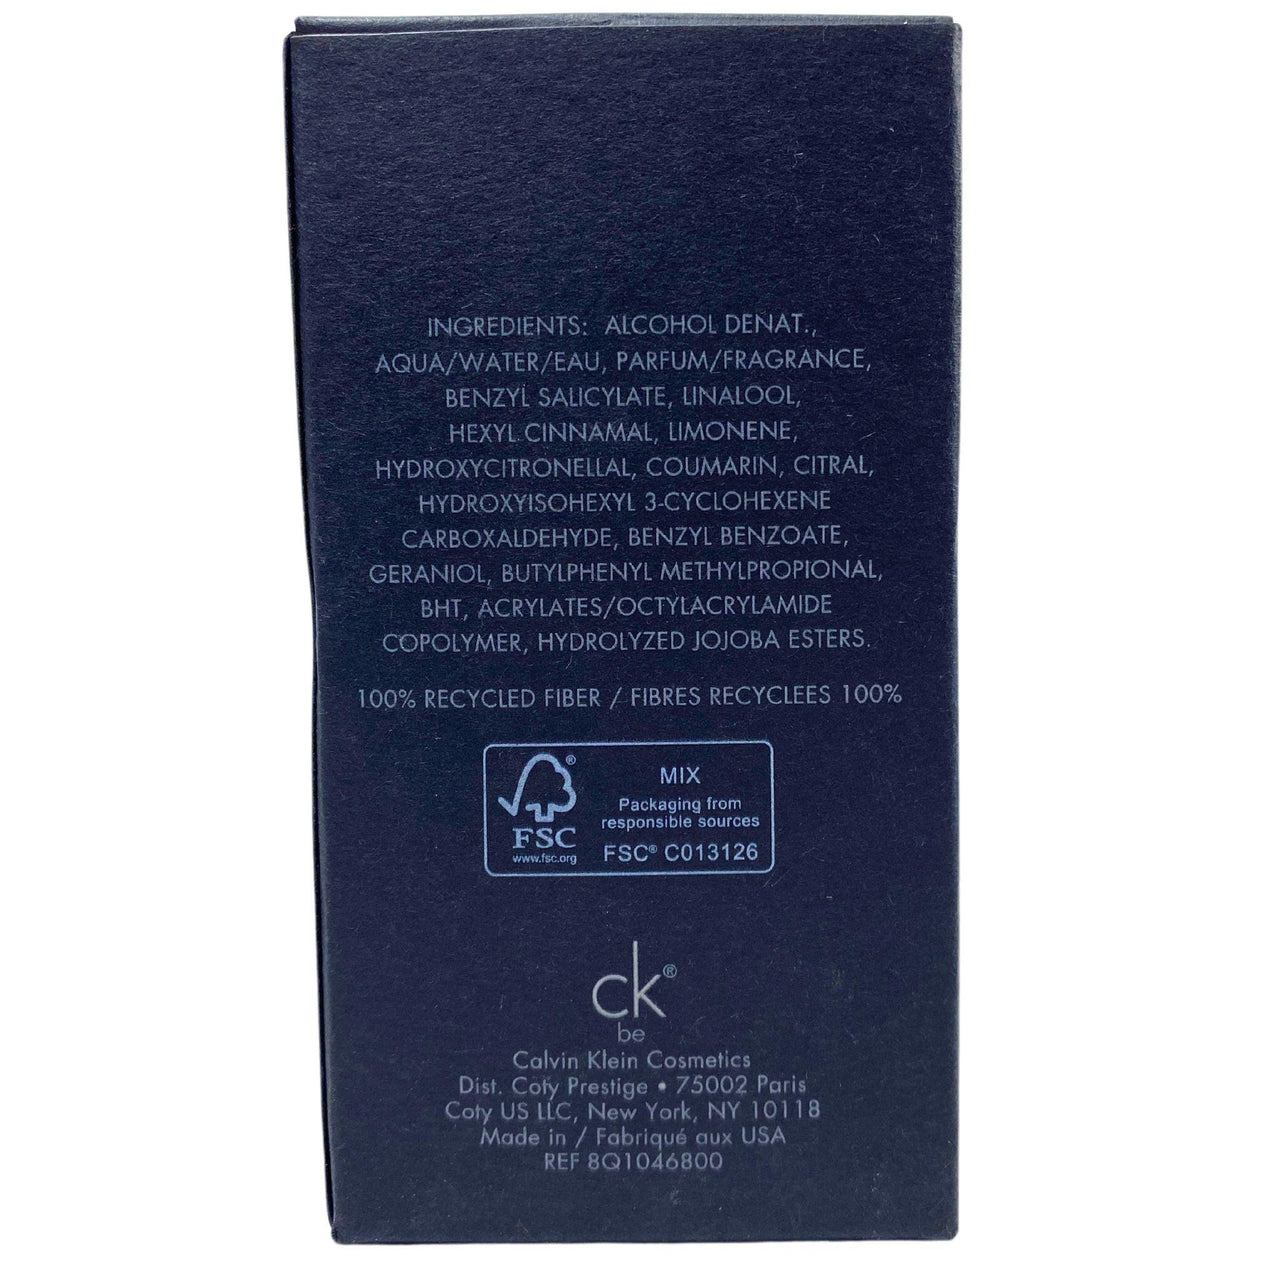 Calvin Klein CK be Eau De Toilette 1.7OZ (20 Pcs Lot) - Discount Wholesalers Inc